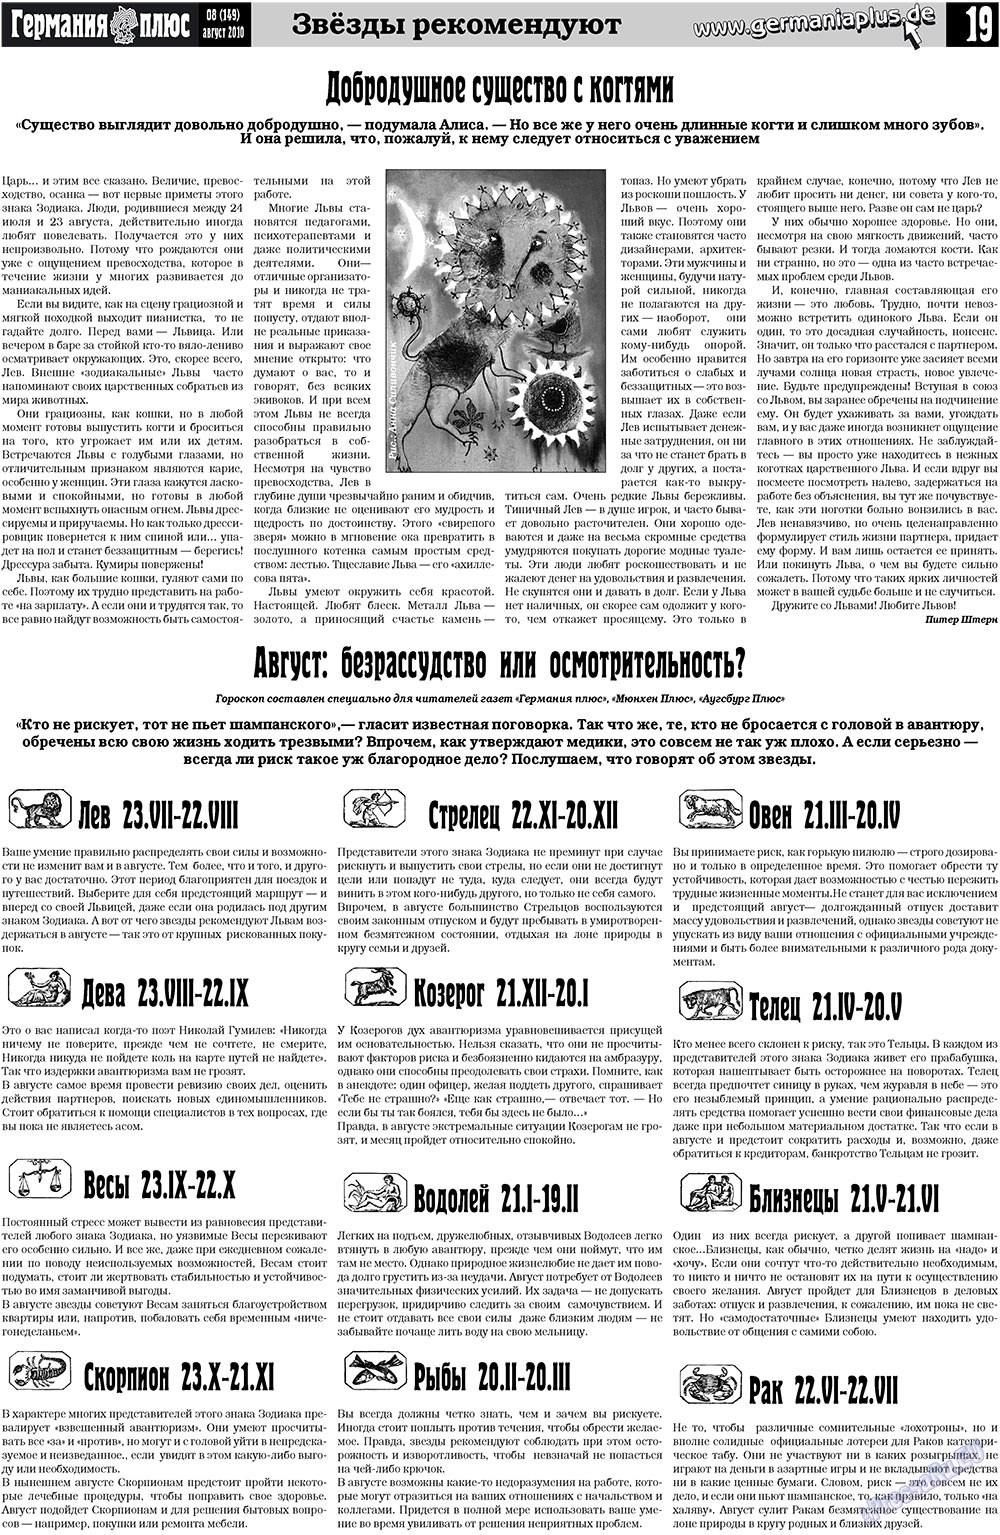 Германия плюс (газета). 2010 год, номер 8, стр. 19